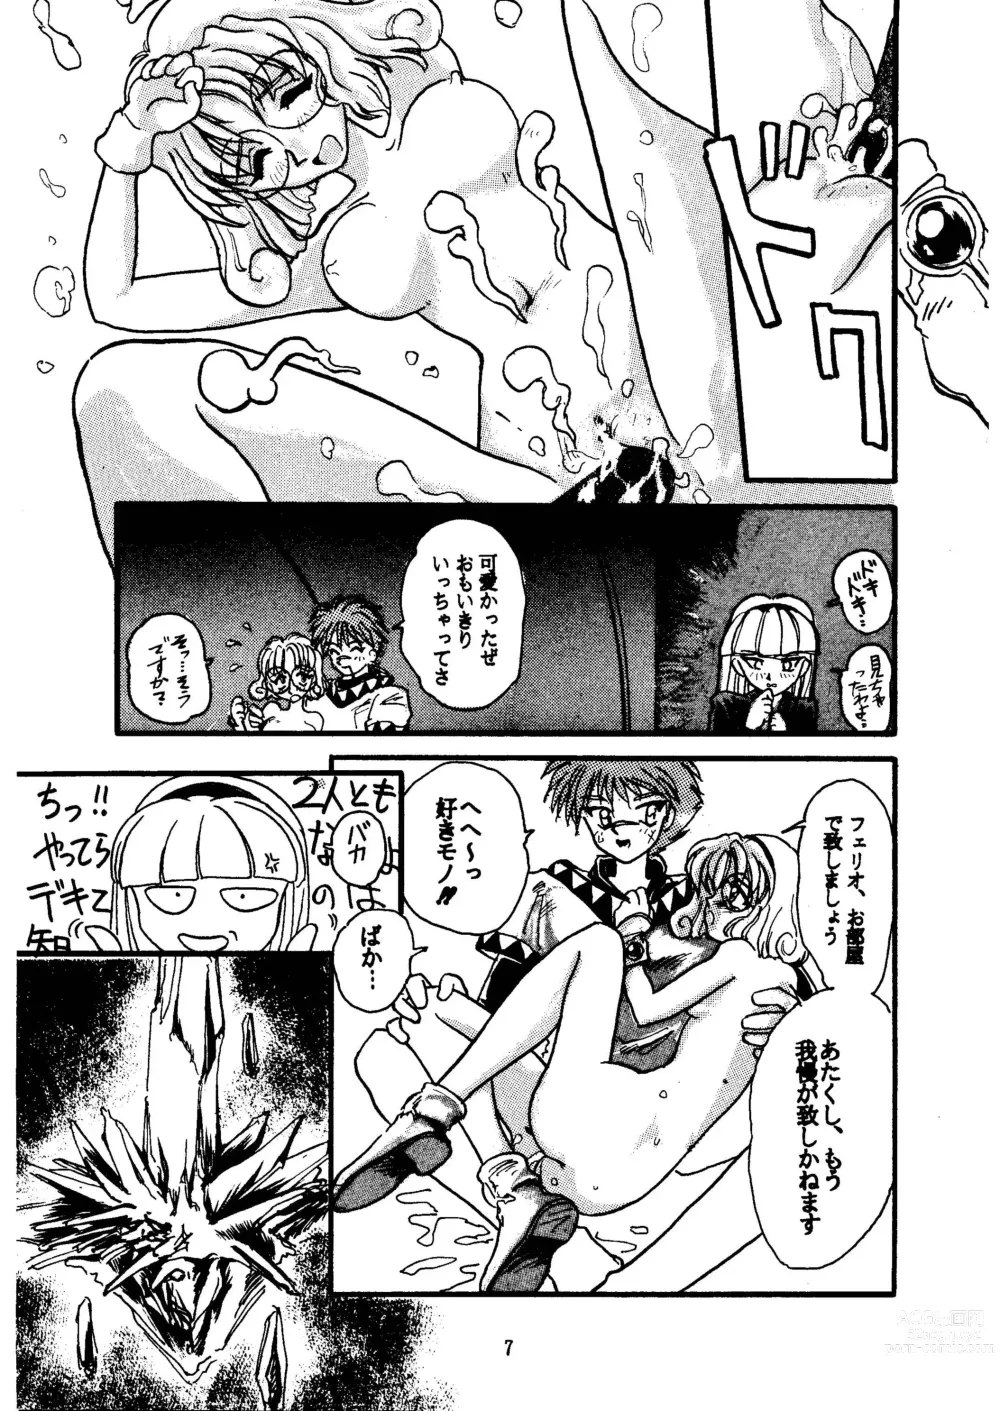 Page 7 of doujinshi GALTECH